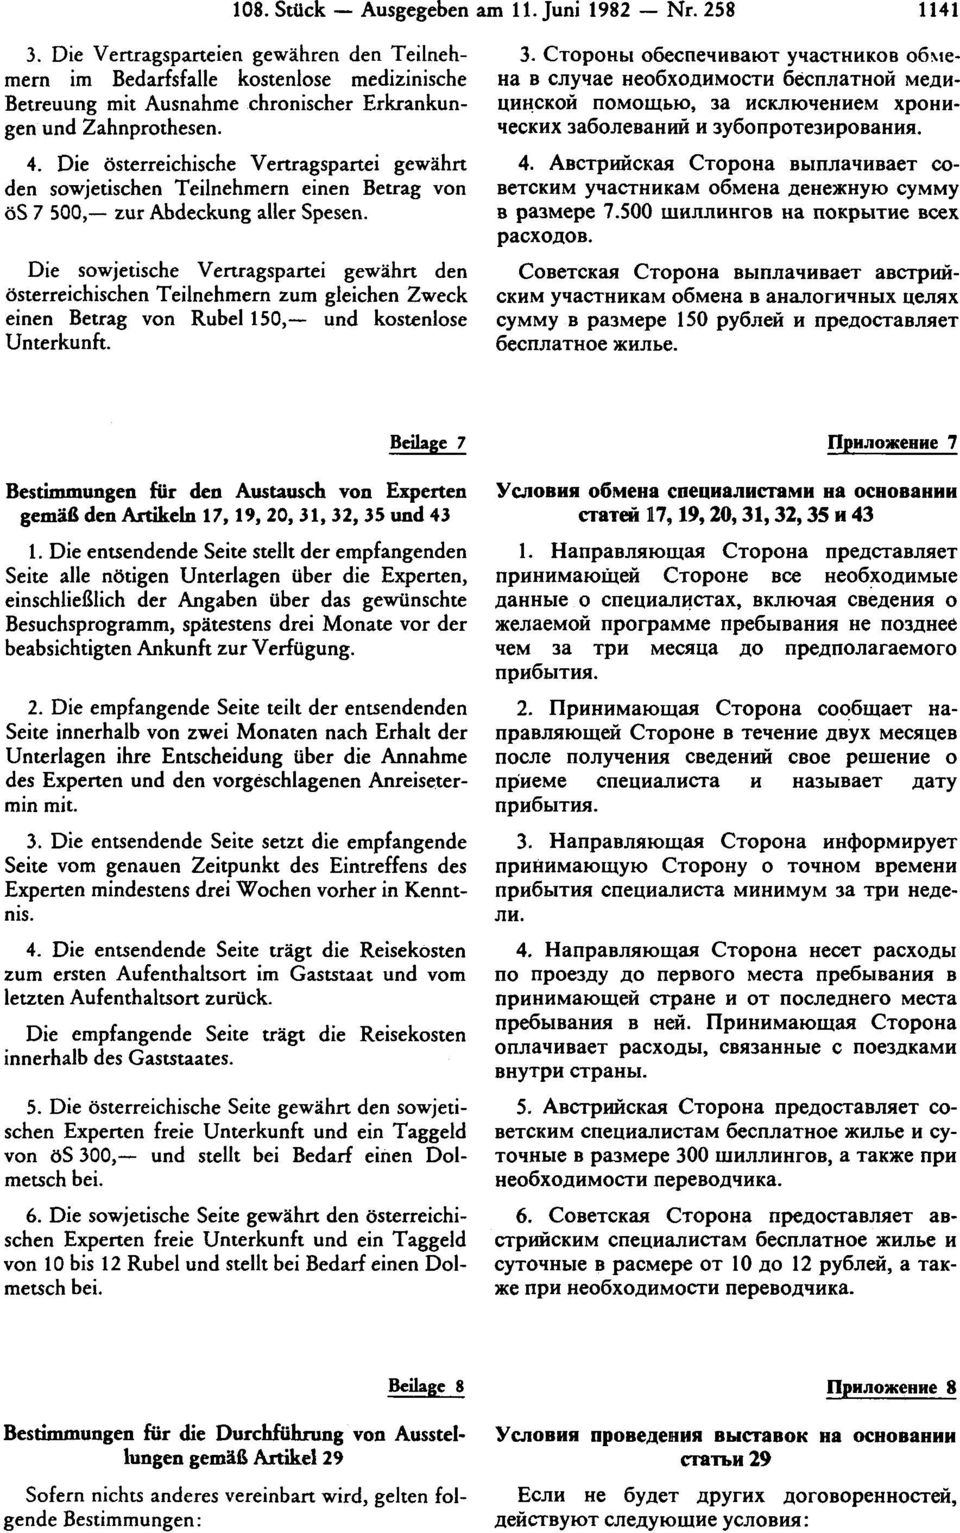 Die österreichische Vertragspartei gewährt den sowjetischen Teilnehmern einen Betrag von ös 7 500, zur Abdeckung aller Spesen.